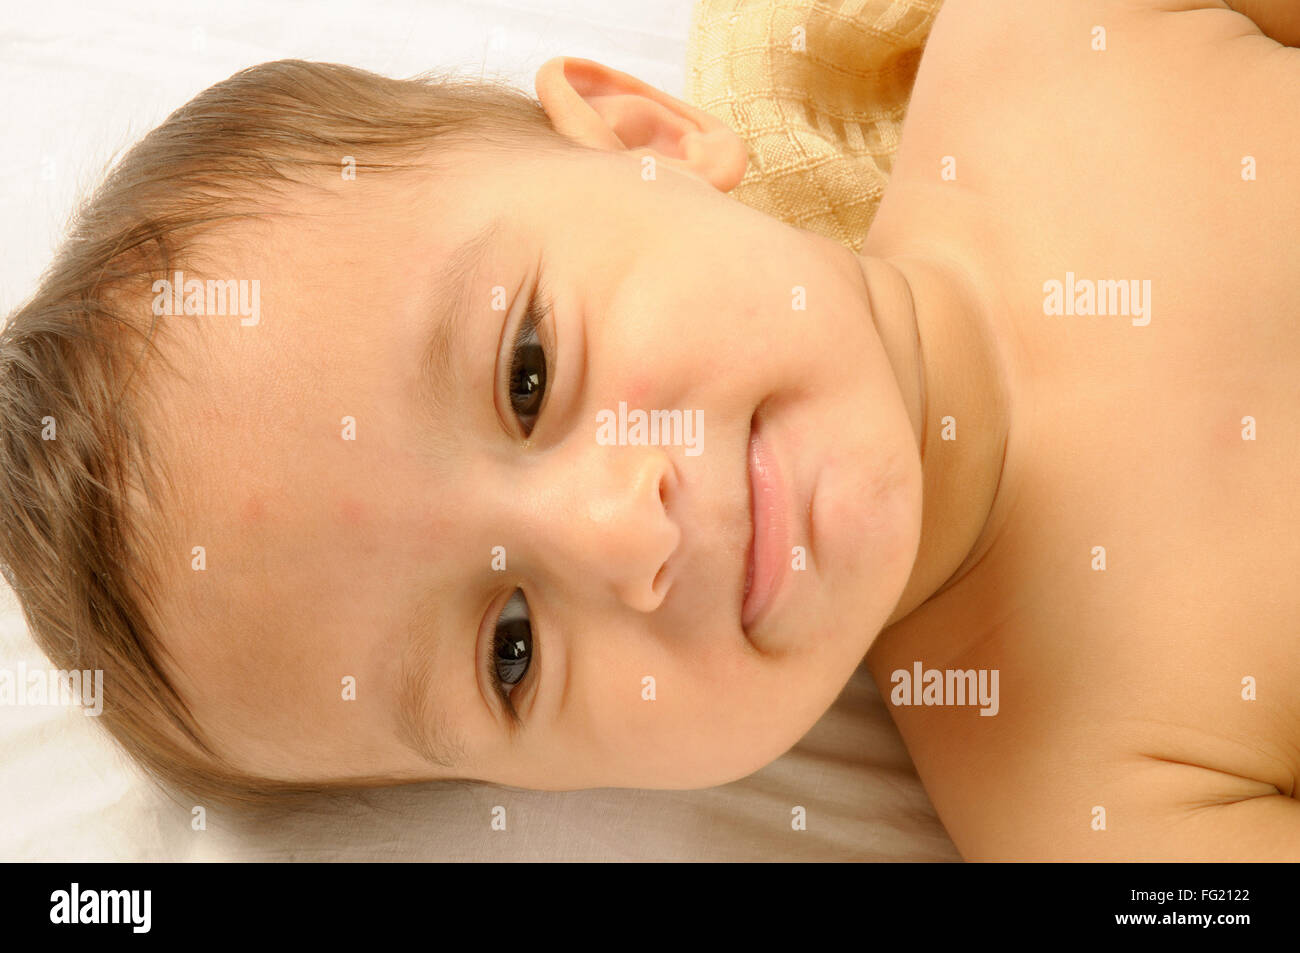 Un an bébé garçon couché et souriant joyeusement MR# 592 29 Mars 2008 Banque D'Images